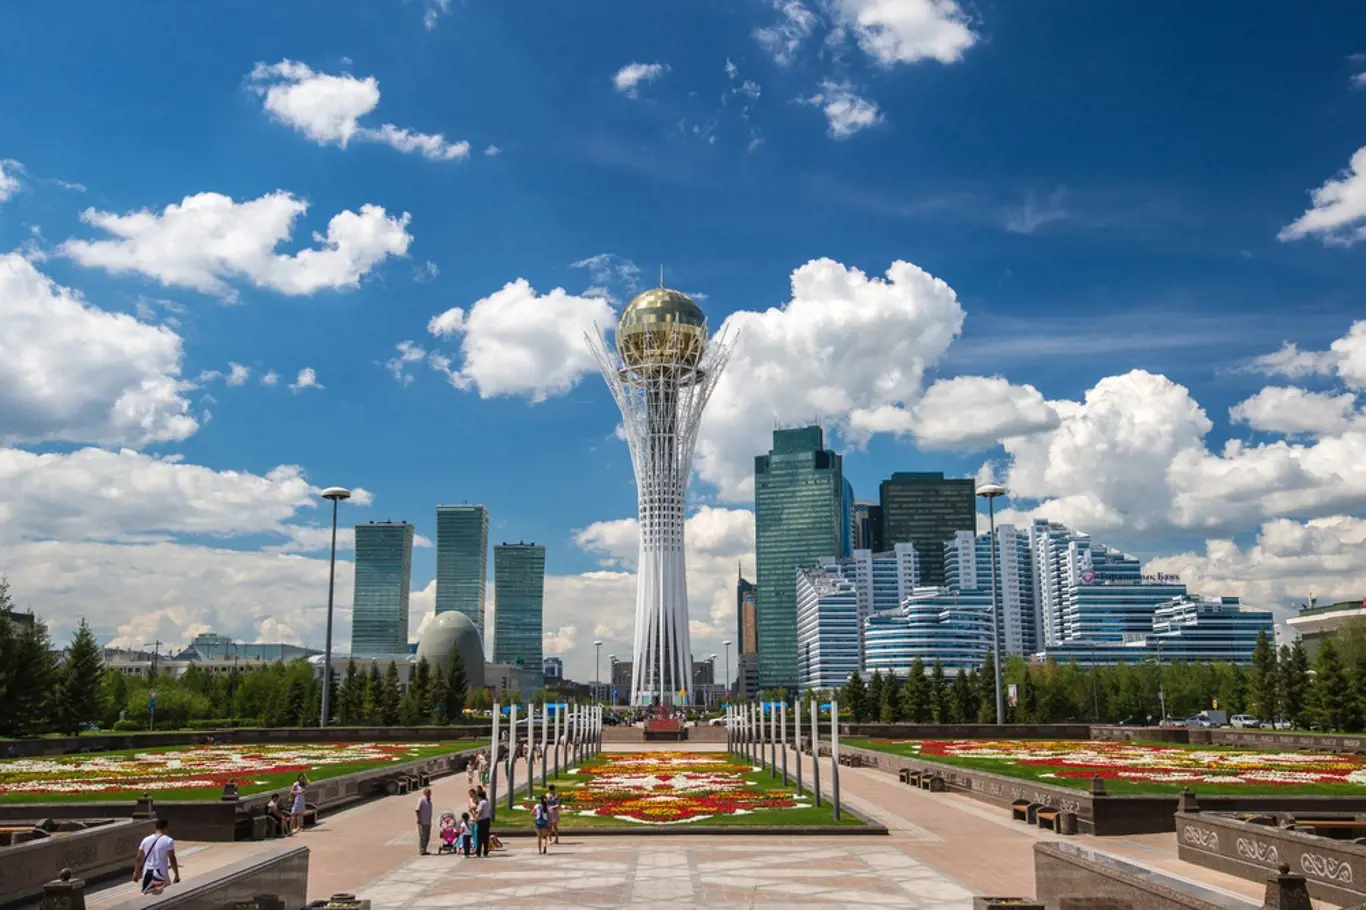 Novostavby v centru hlavního města Kazachstánu Astany.